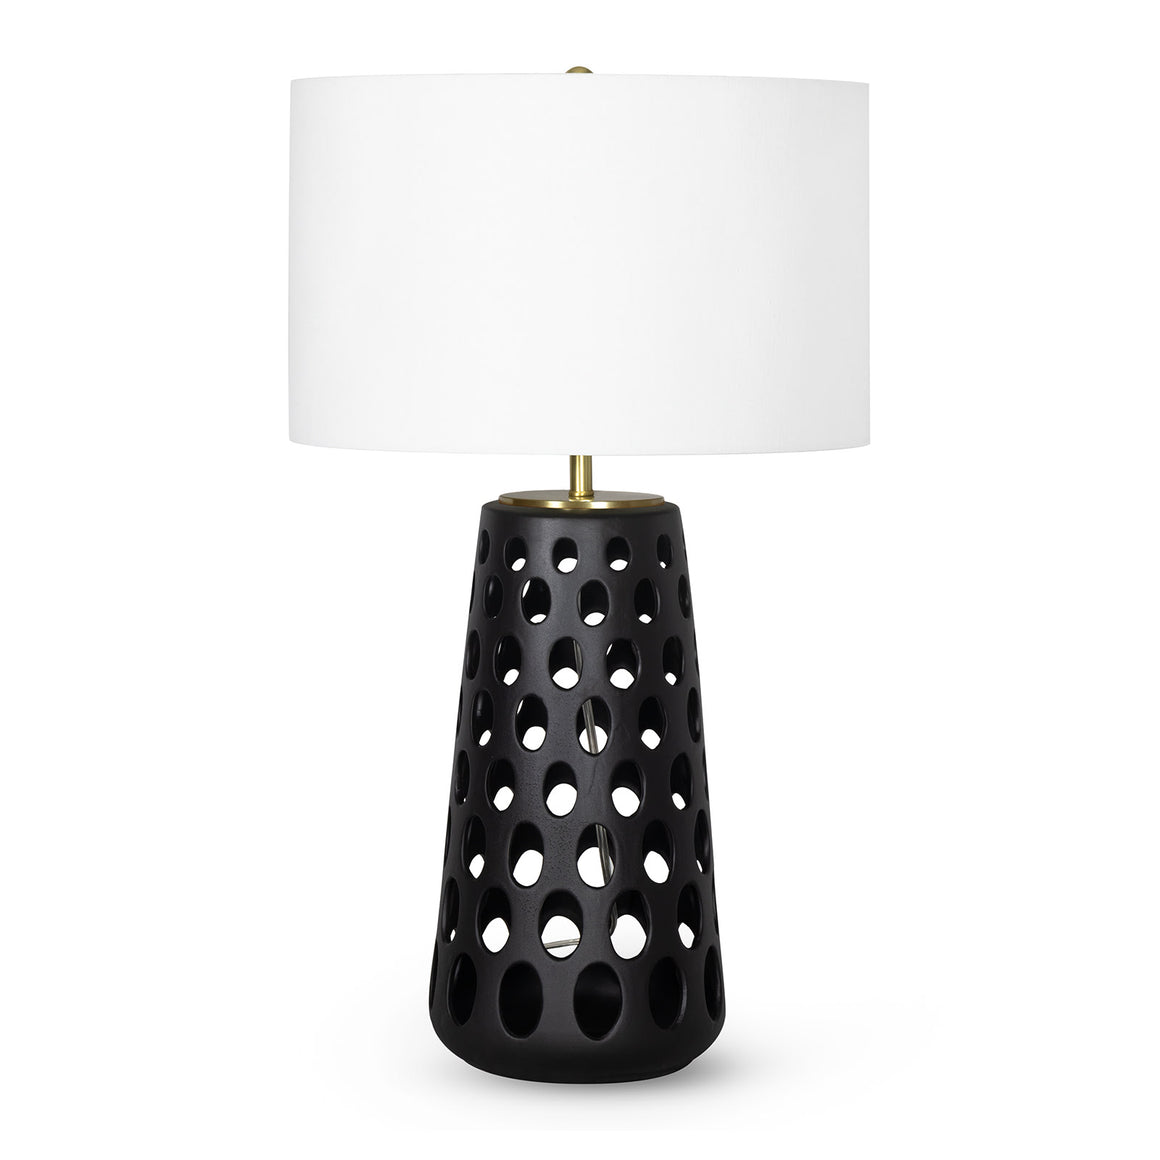 Kelvin Ceramic Table Lamp (Black)